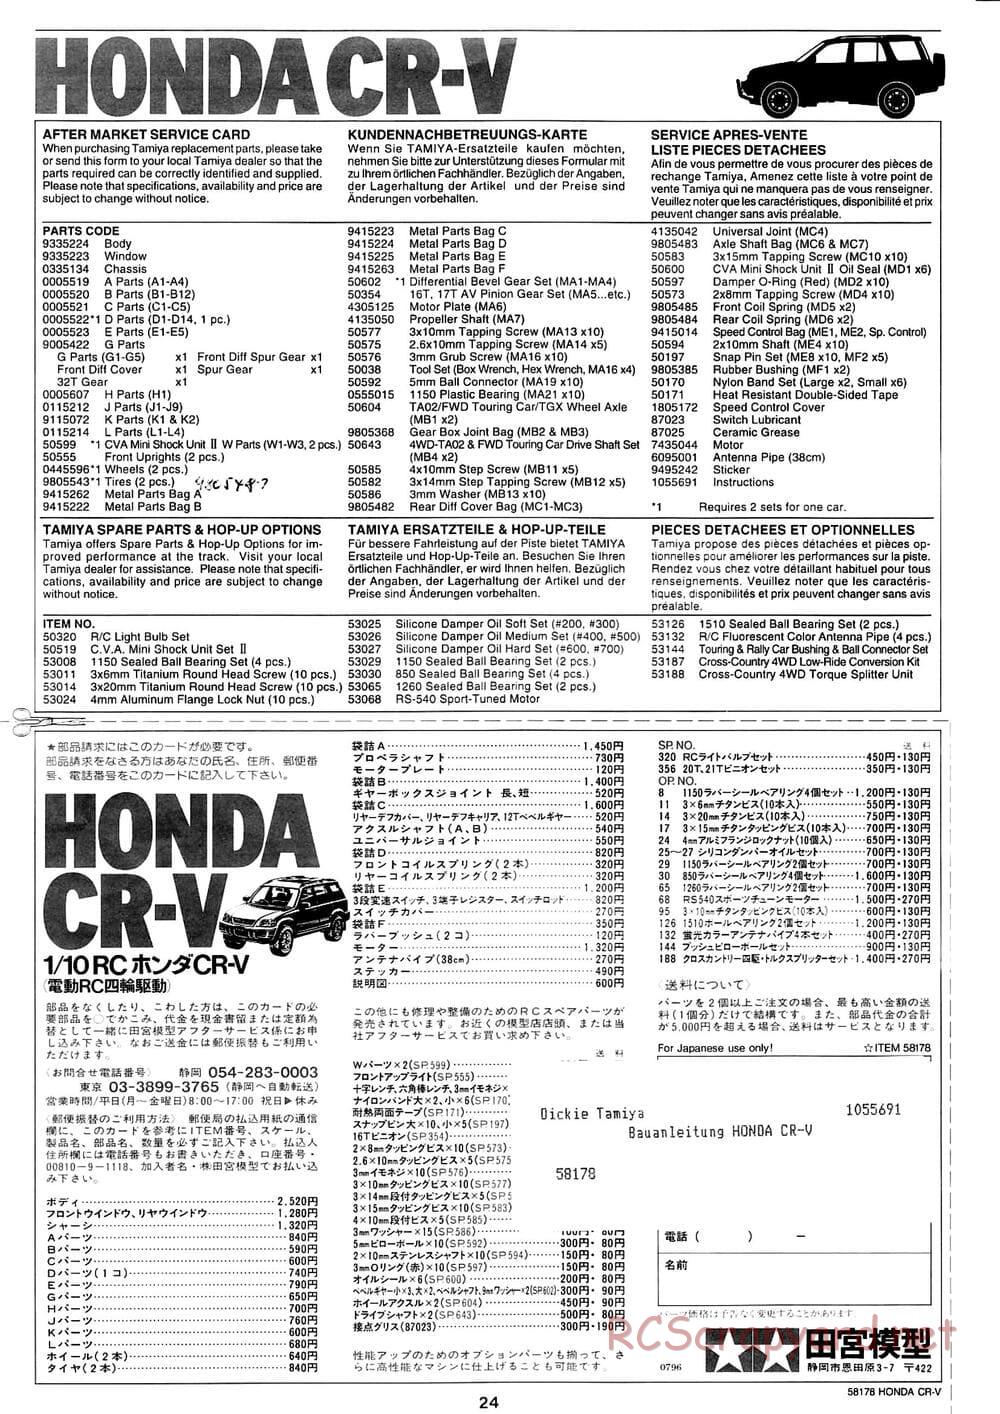 Tamiya - Honda CR-V - CC-01 Chassis - Manual - Page 24